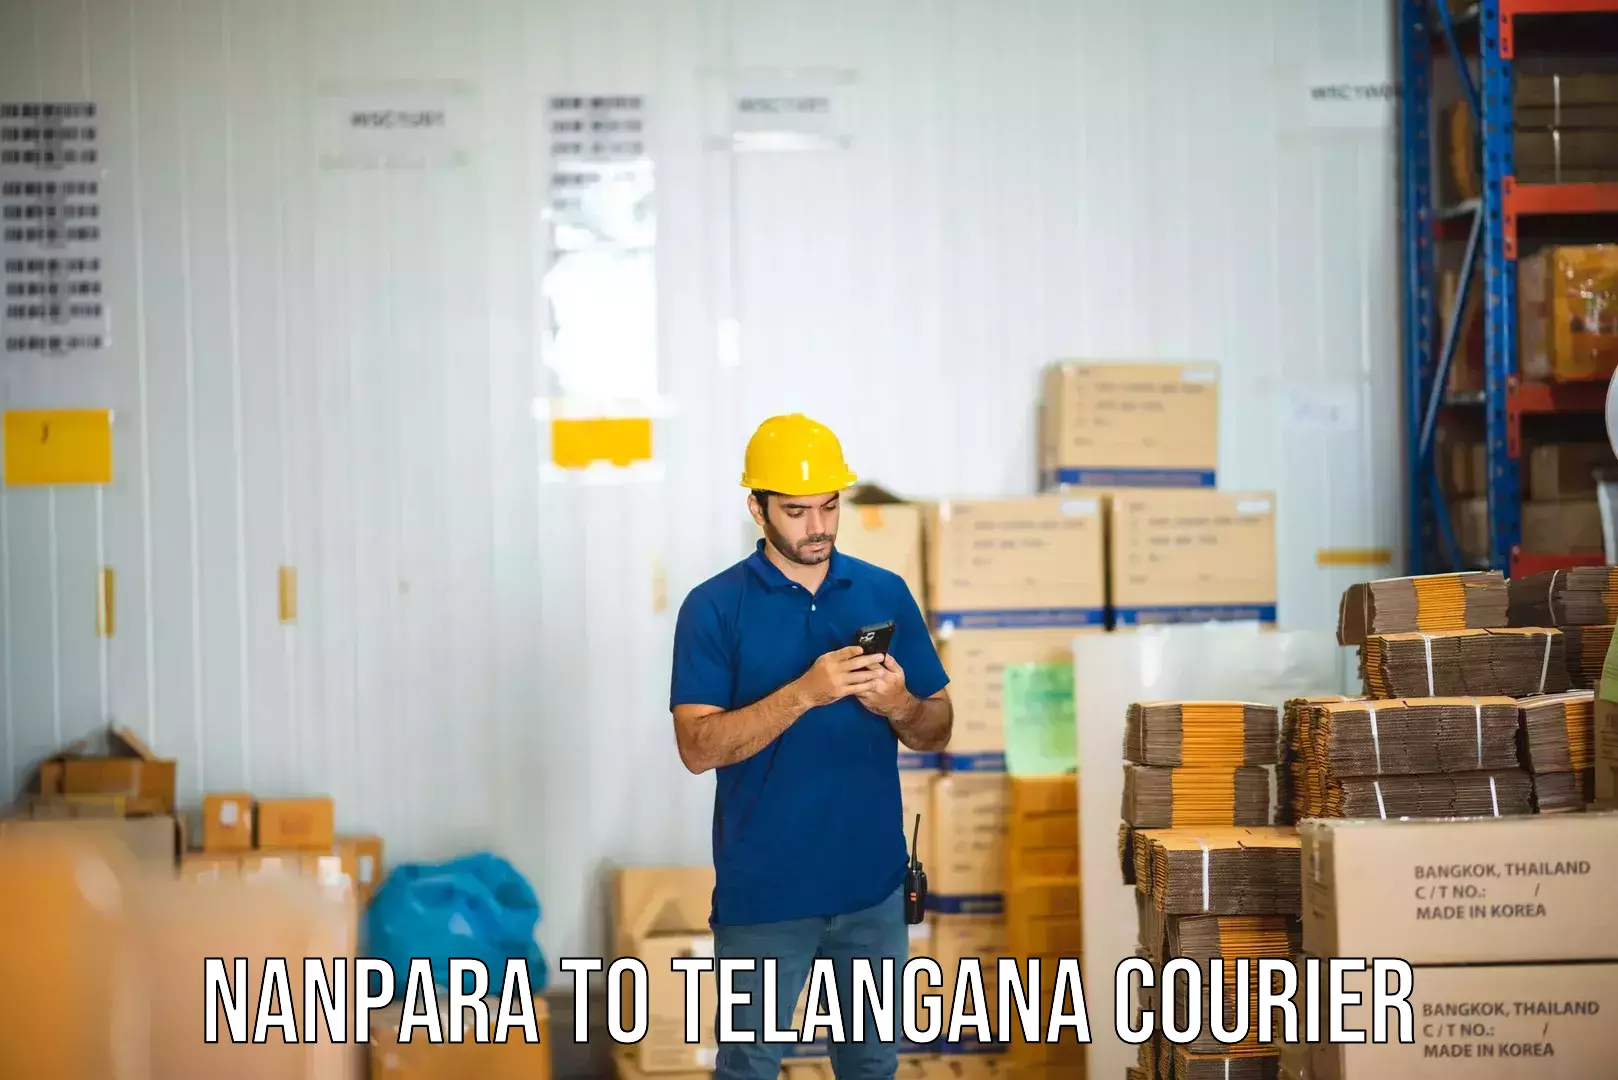 Express mail service Nanpara to Telangana